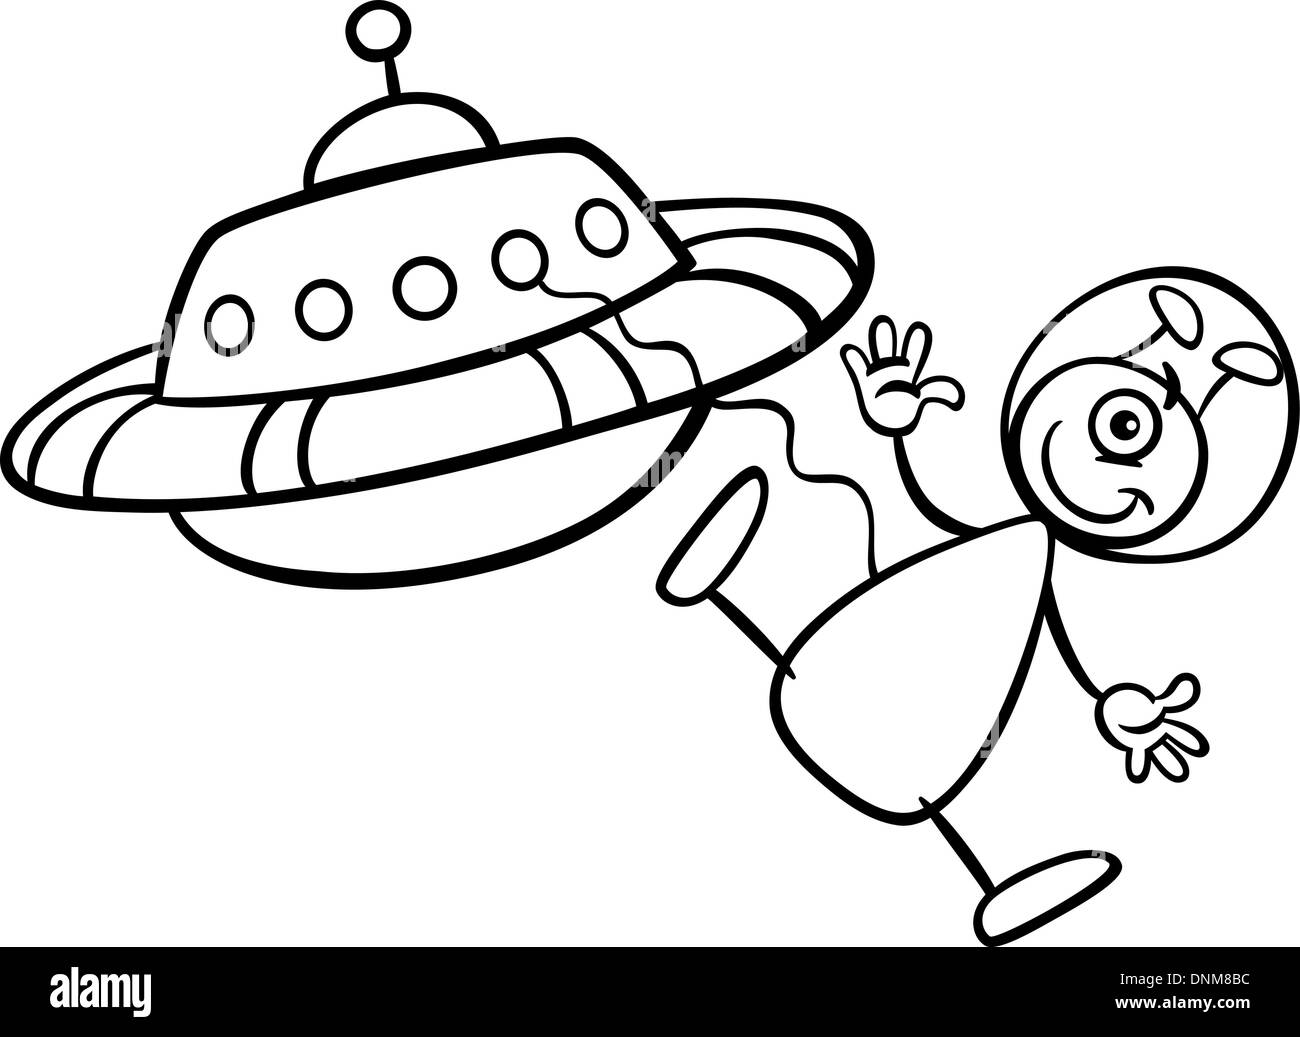 Schwarz / Weiß Cartoon Illustration von lustigen Alien oder Martian Comic-Figur mit Raumschiff oder Ufo für Malbuch Stock Vektor